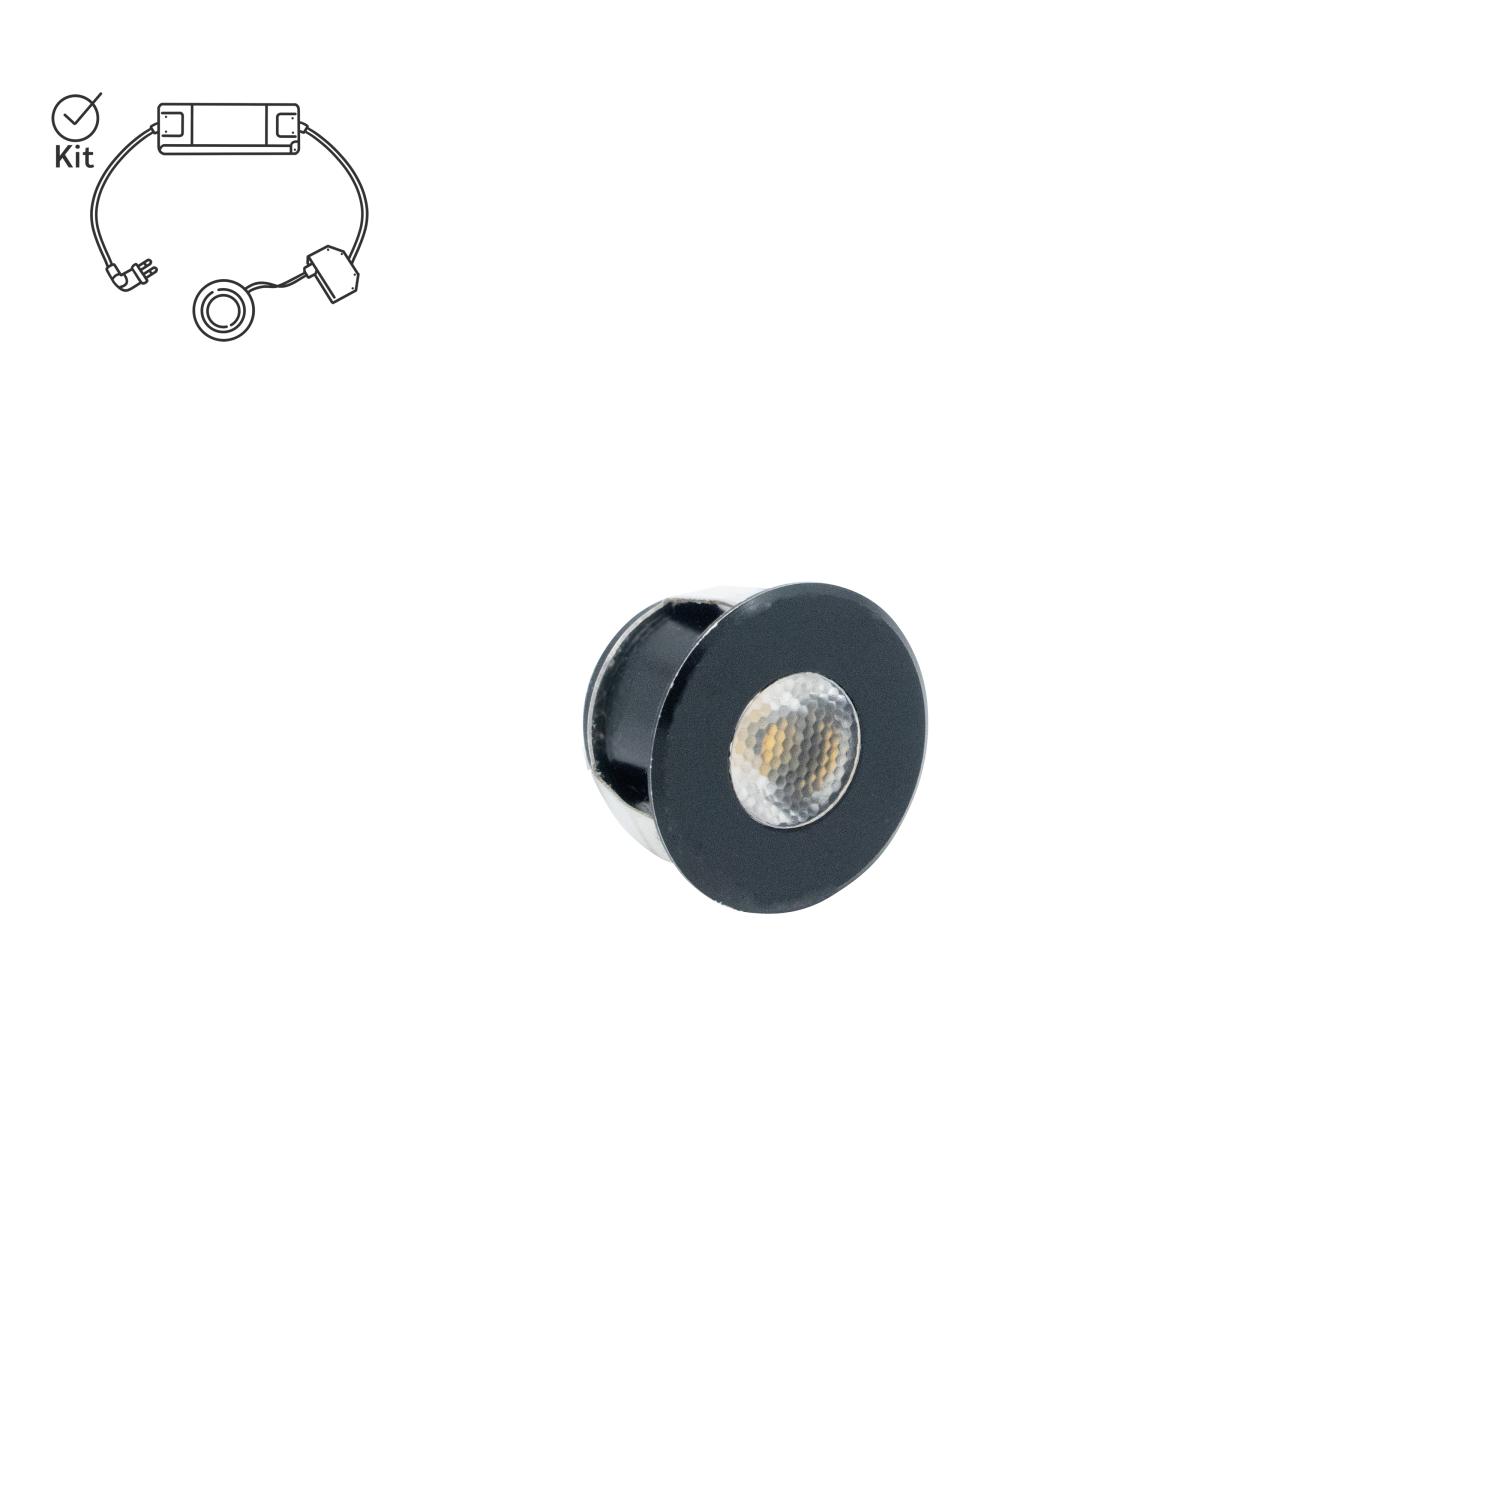 Mini LED spotlight i svart med symbol som visar att produkten köps i komplett kit